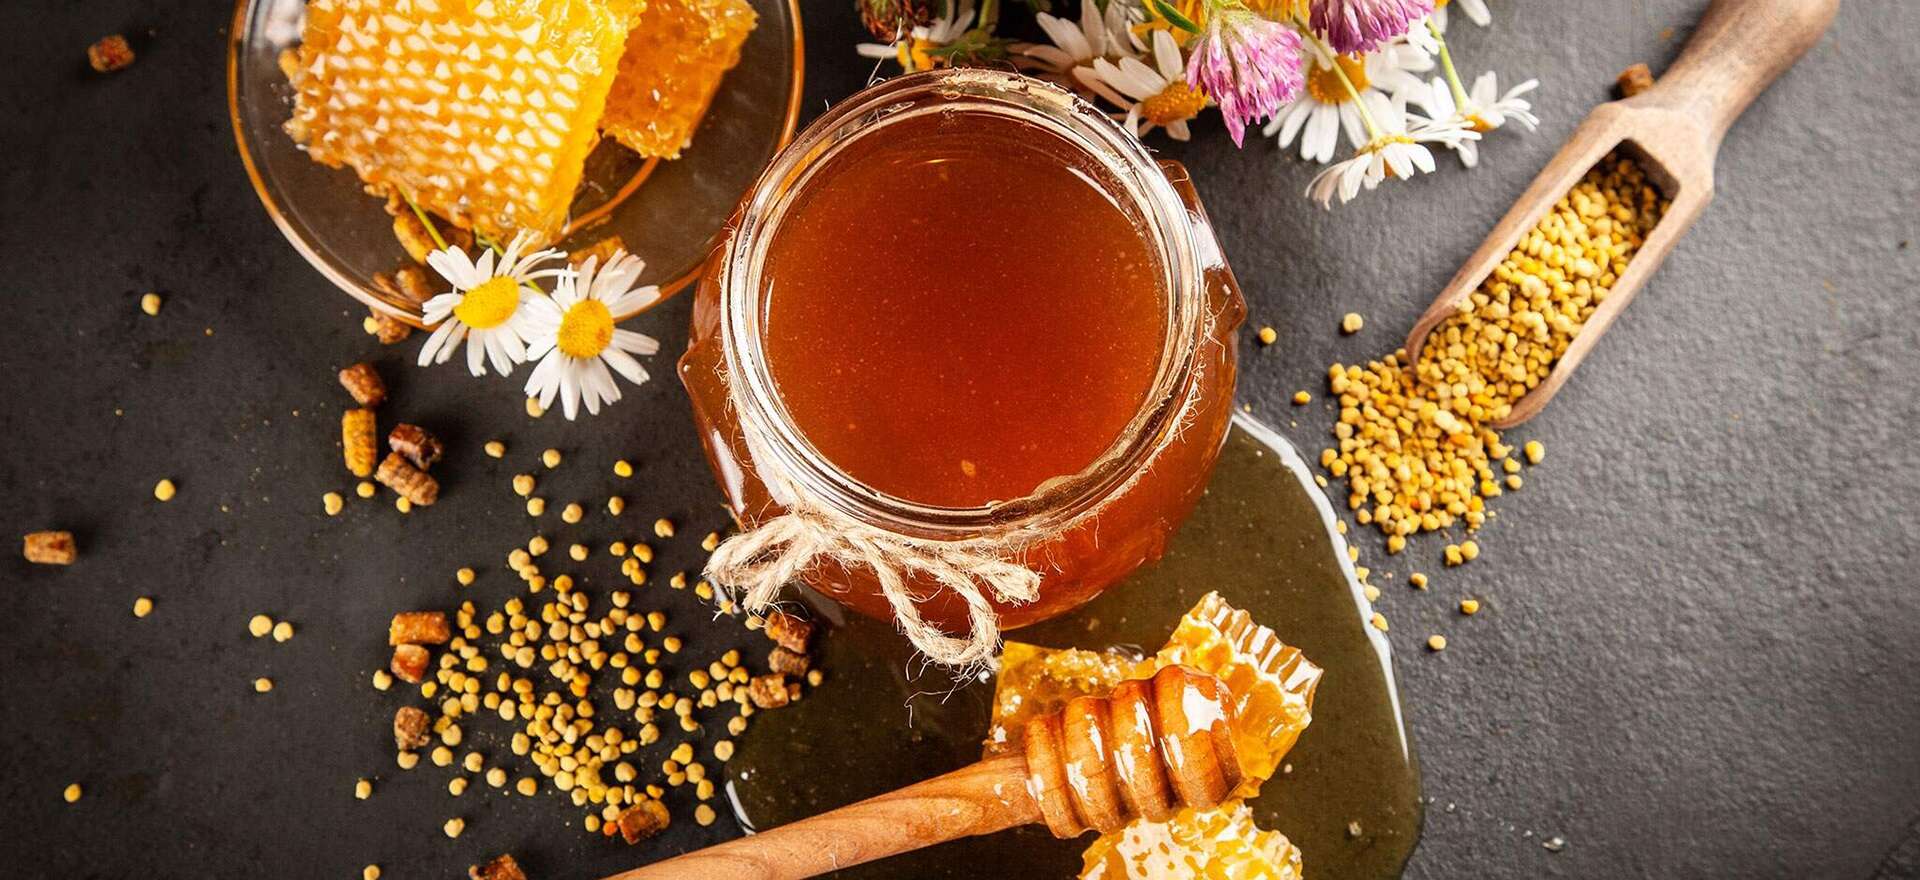 صفحه اصلی - عسل فروردین - عسل - عسل طبیعی - ژل رویال - ژل رویال اصل - خواص ژل رویال - خرید عسل - خرید عسل طبیعی - خرید ژل رویال - بره موم - خرید بره موم - گرده گل - خرید گرده گل